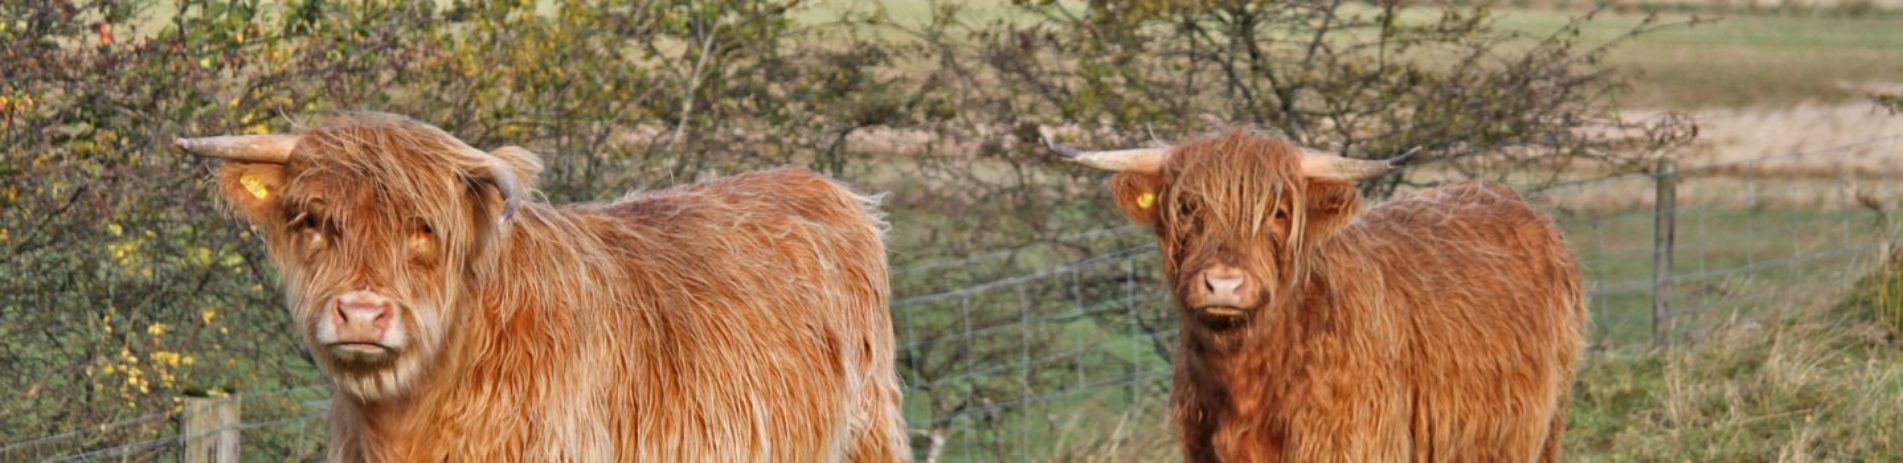 highland-cows-at-leskine-farm-near-killin